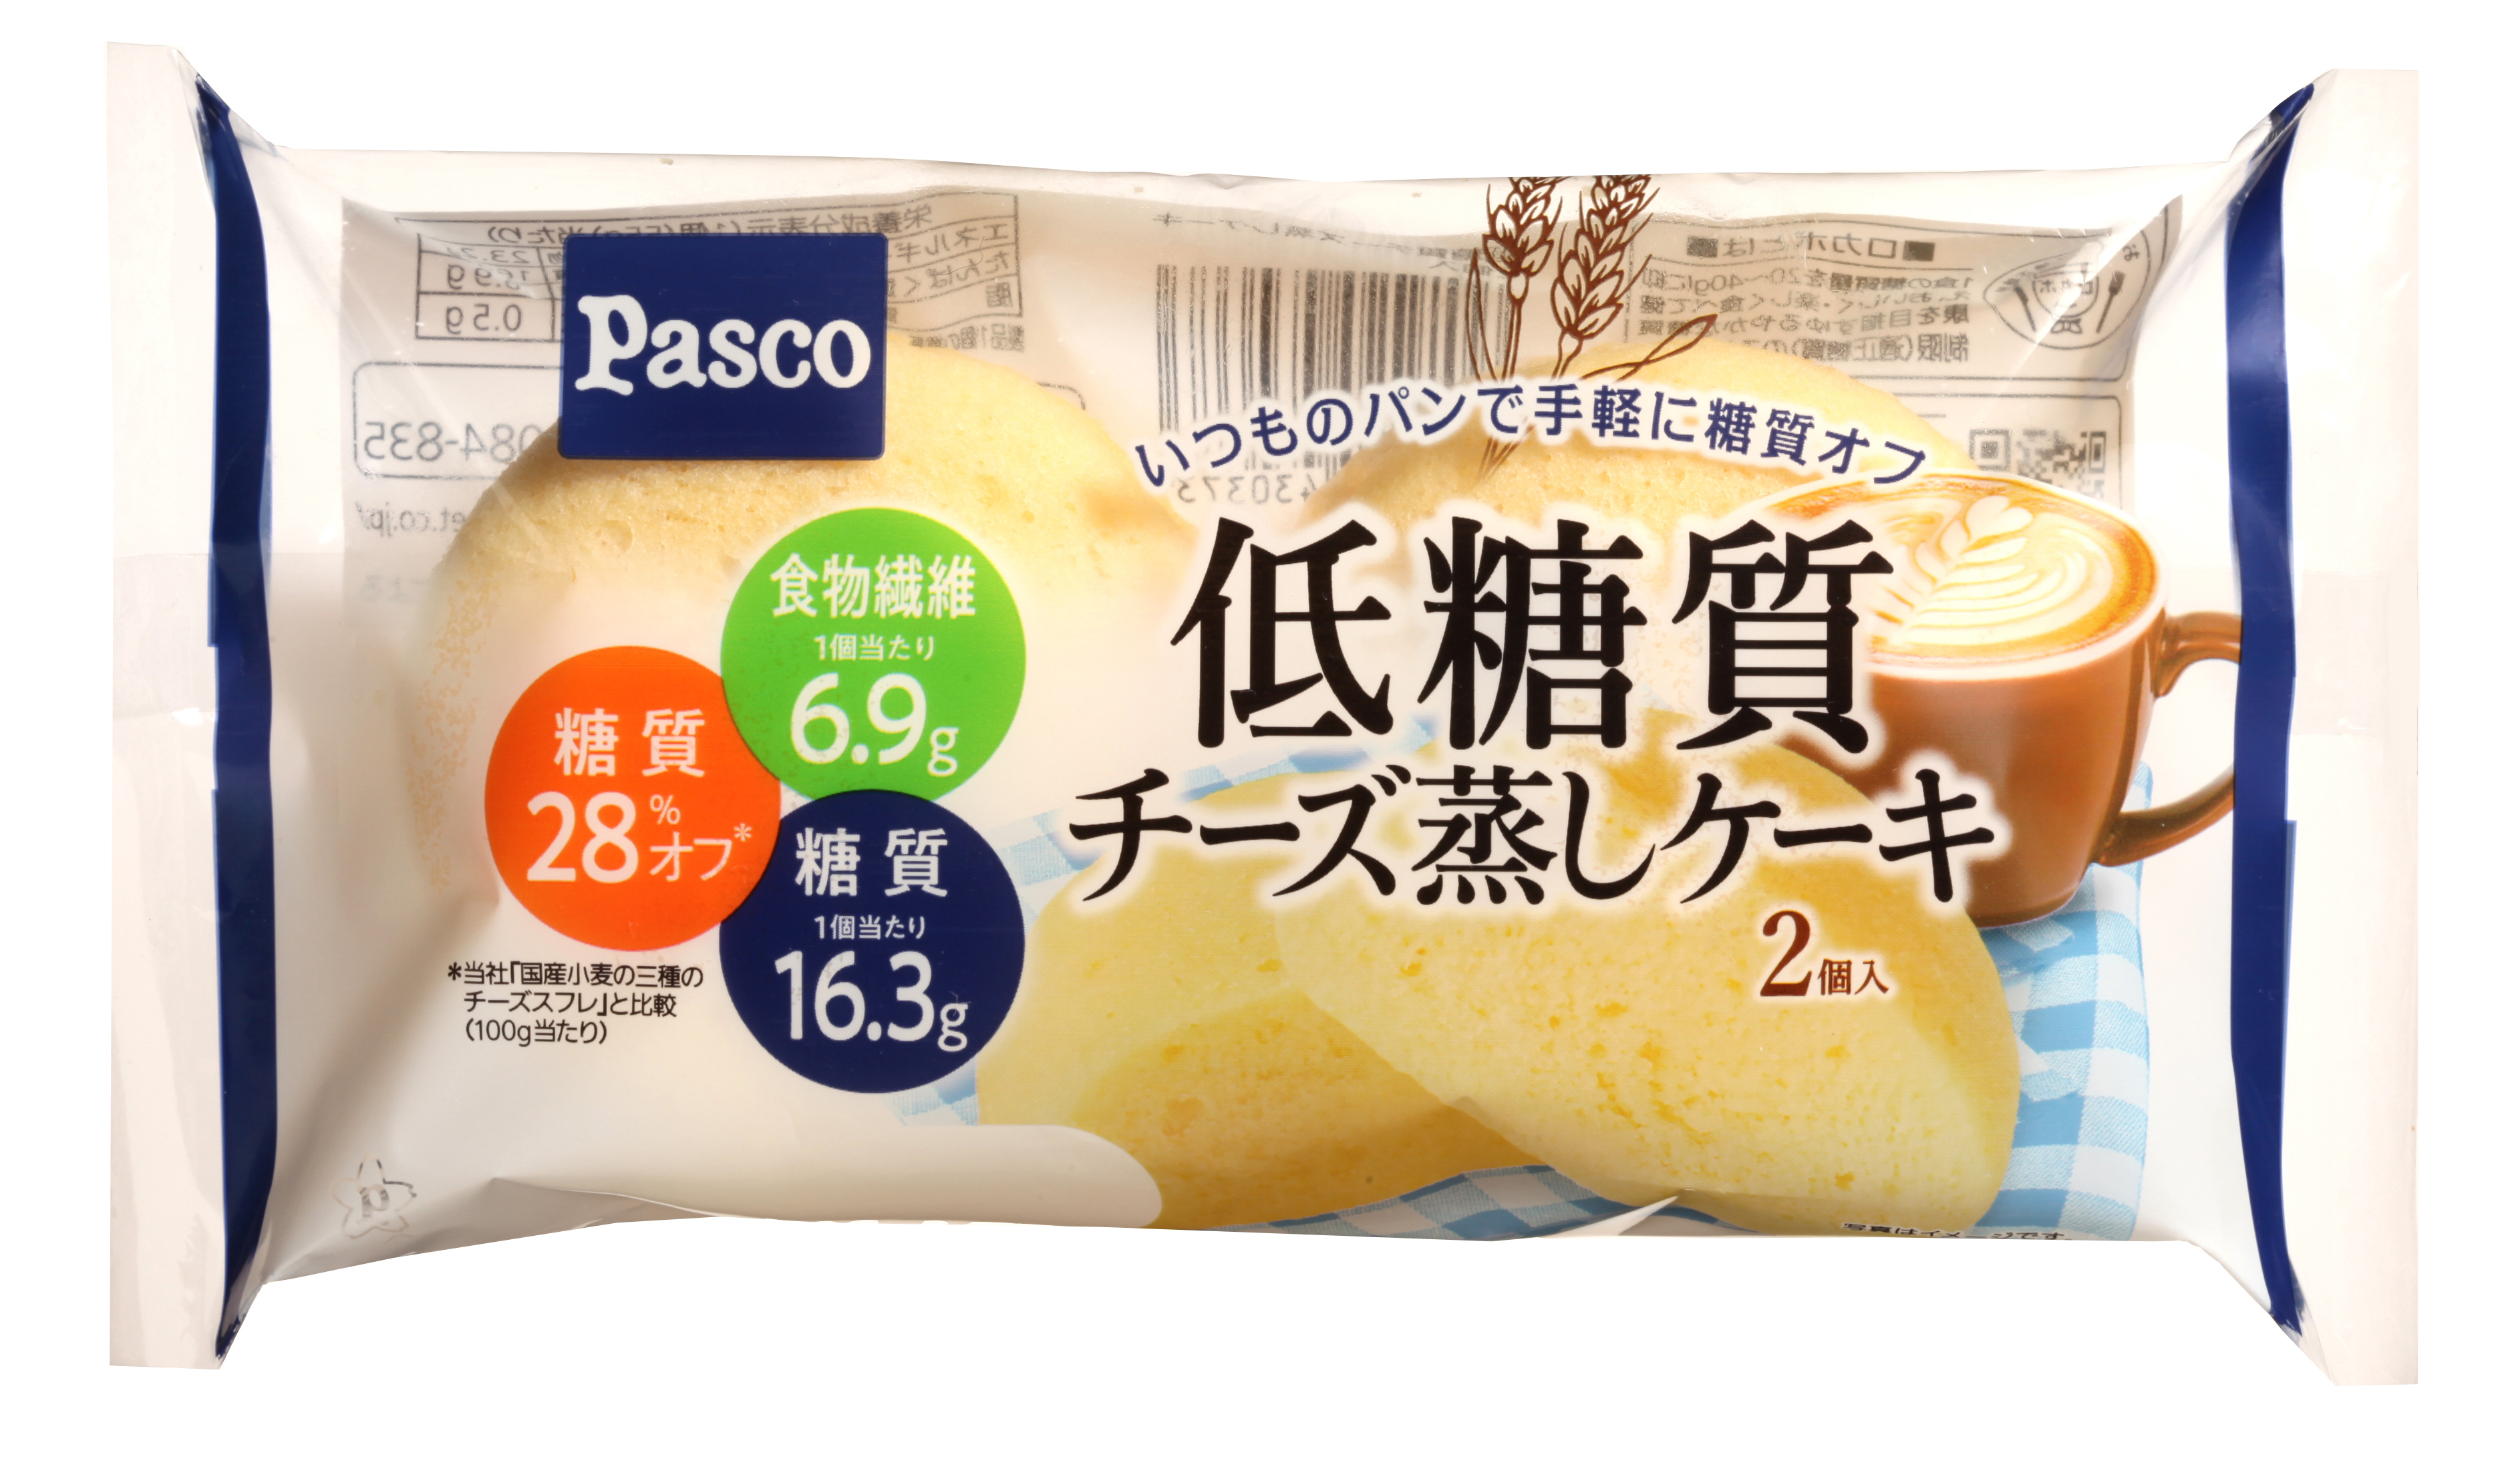 低糖質シリーズ新商品 低糖質チーズ蒸しケーキ2個入 敷島製パン株式会社のプレスリリース